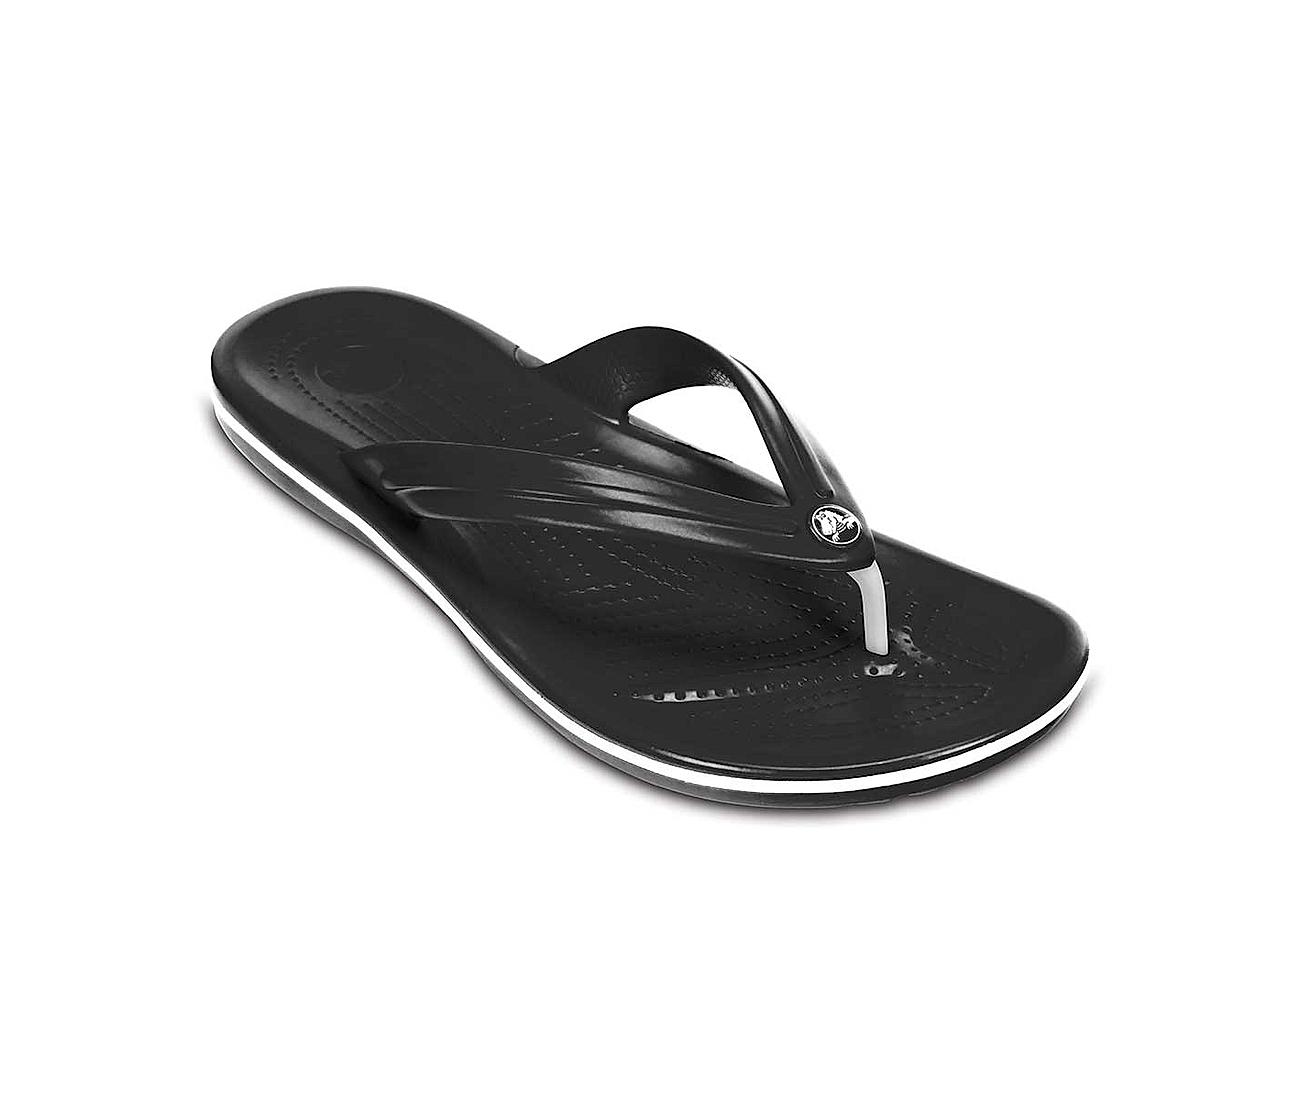 Crocs Flip Flops - Buy Crocs Flip Flops Online in India